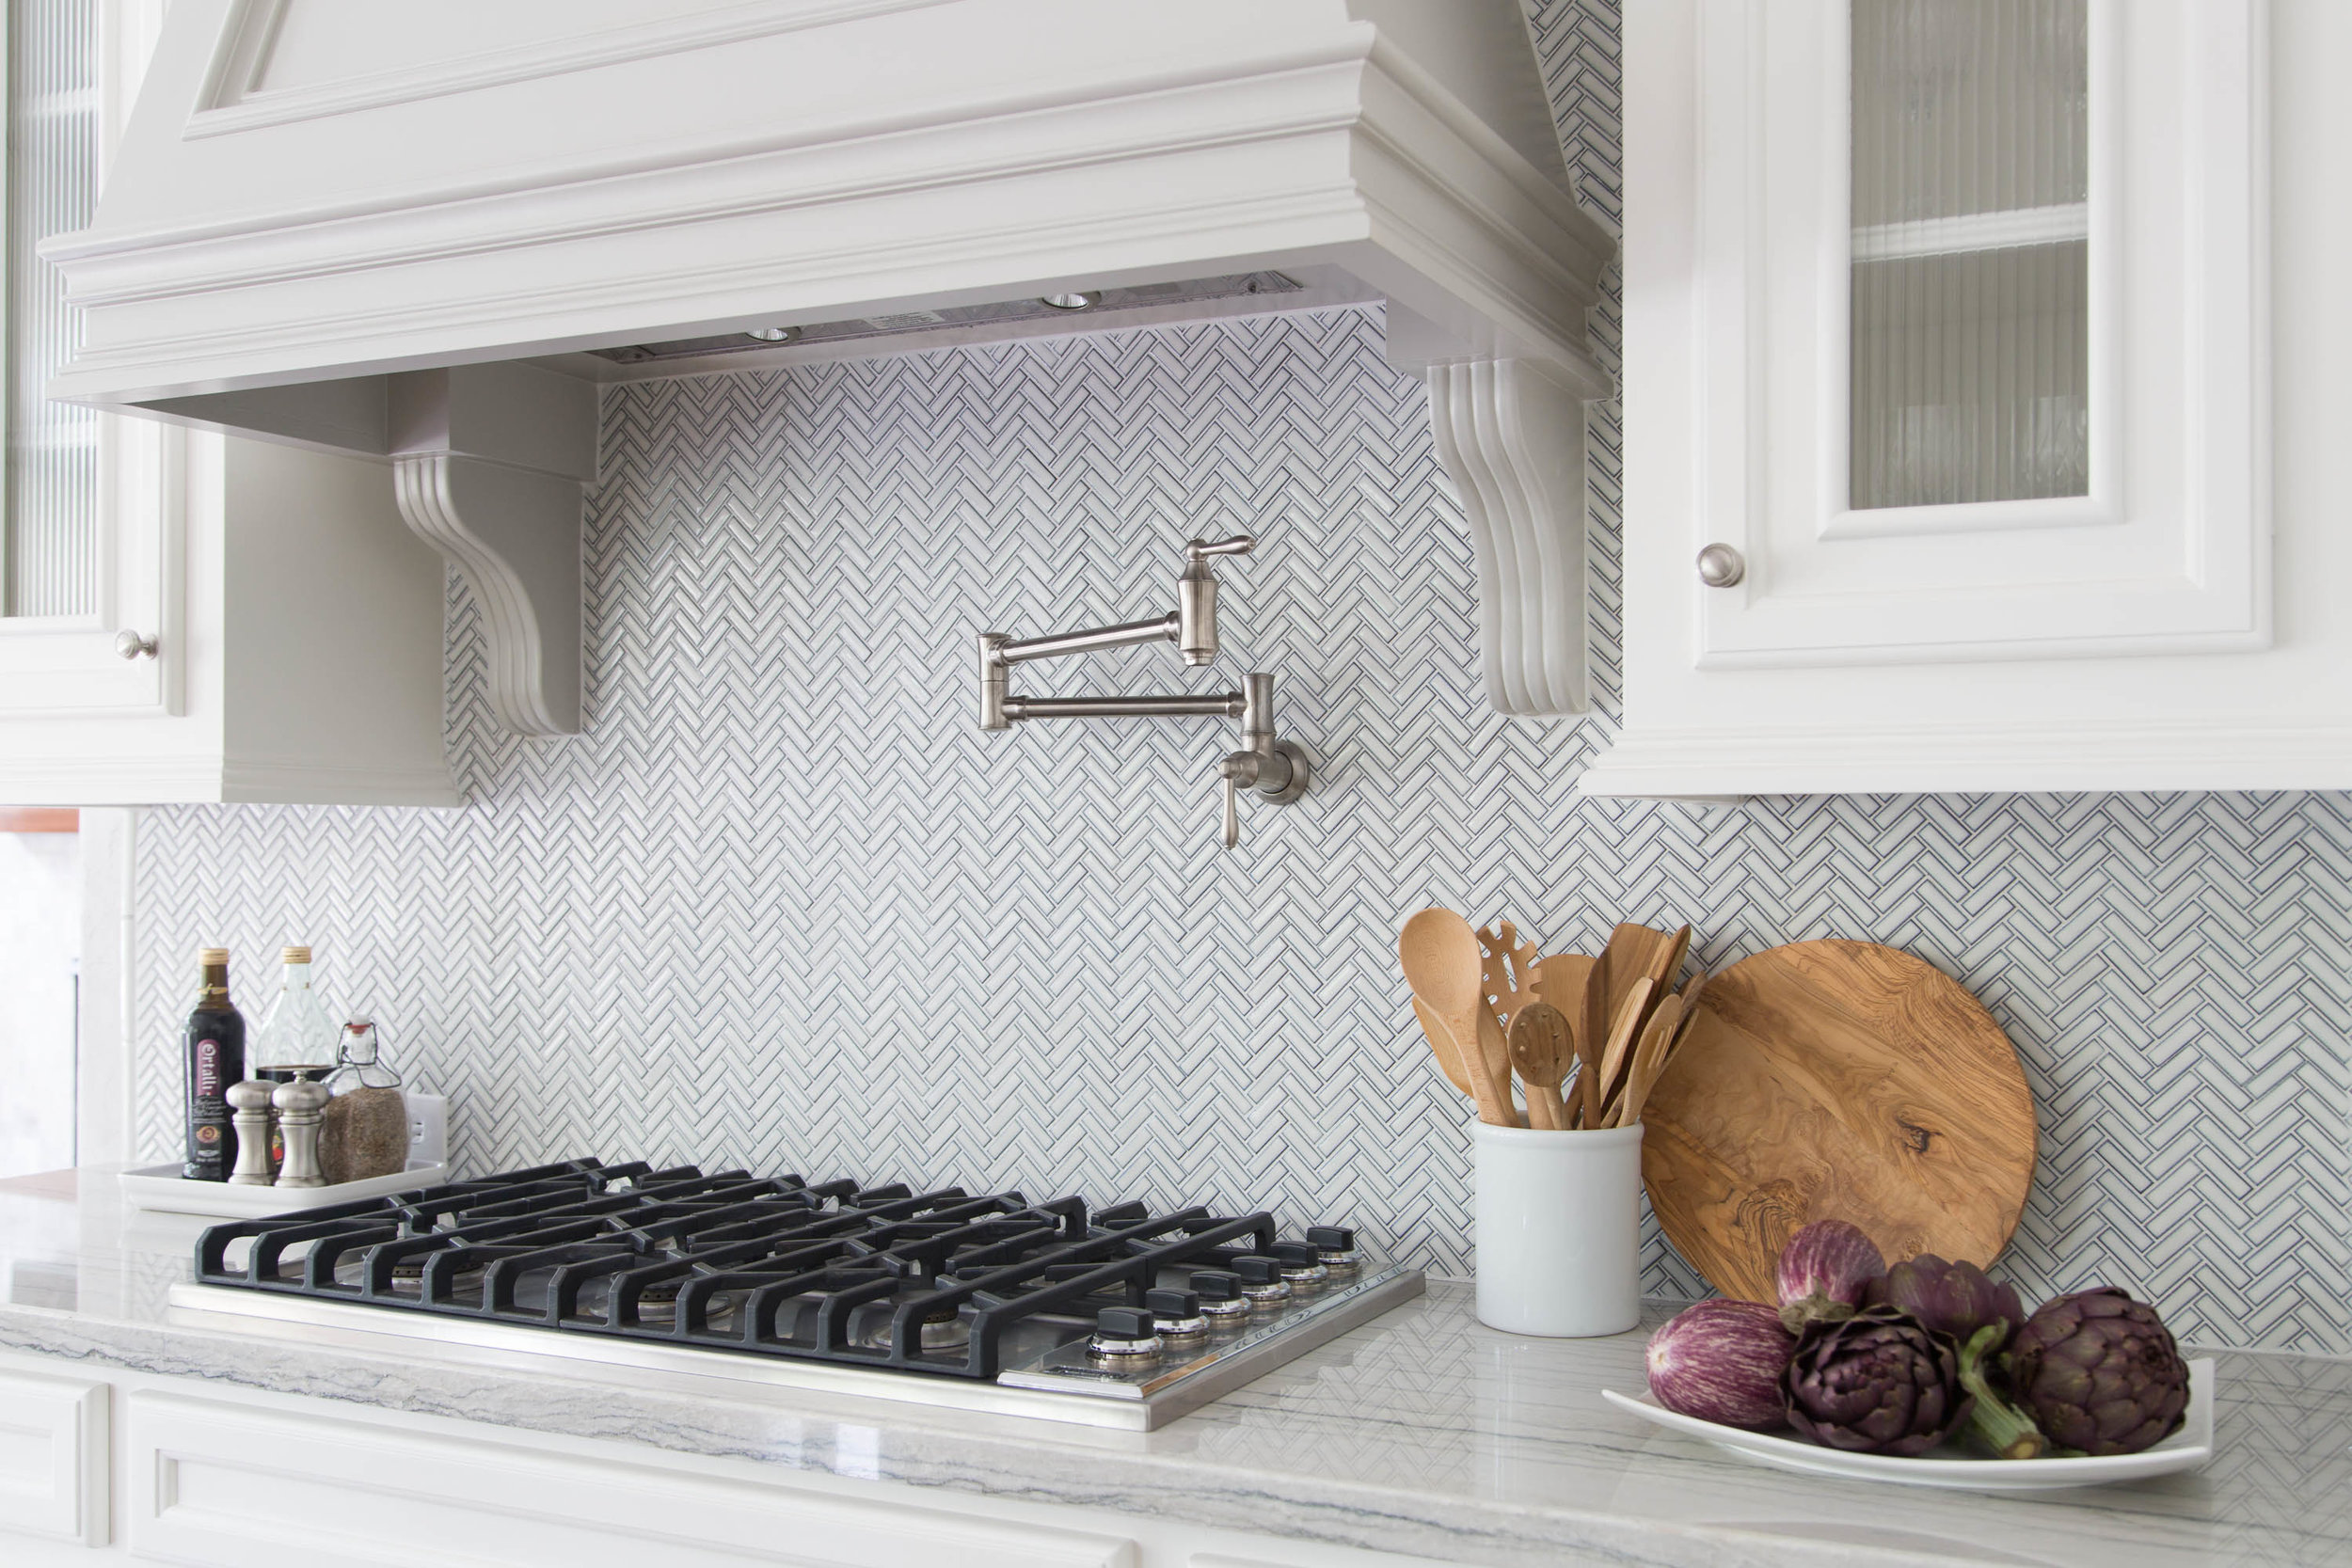 Kitchen Backsplash Details That Define, Small Tile Backsplash